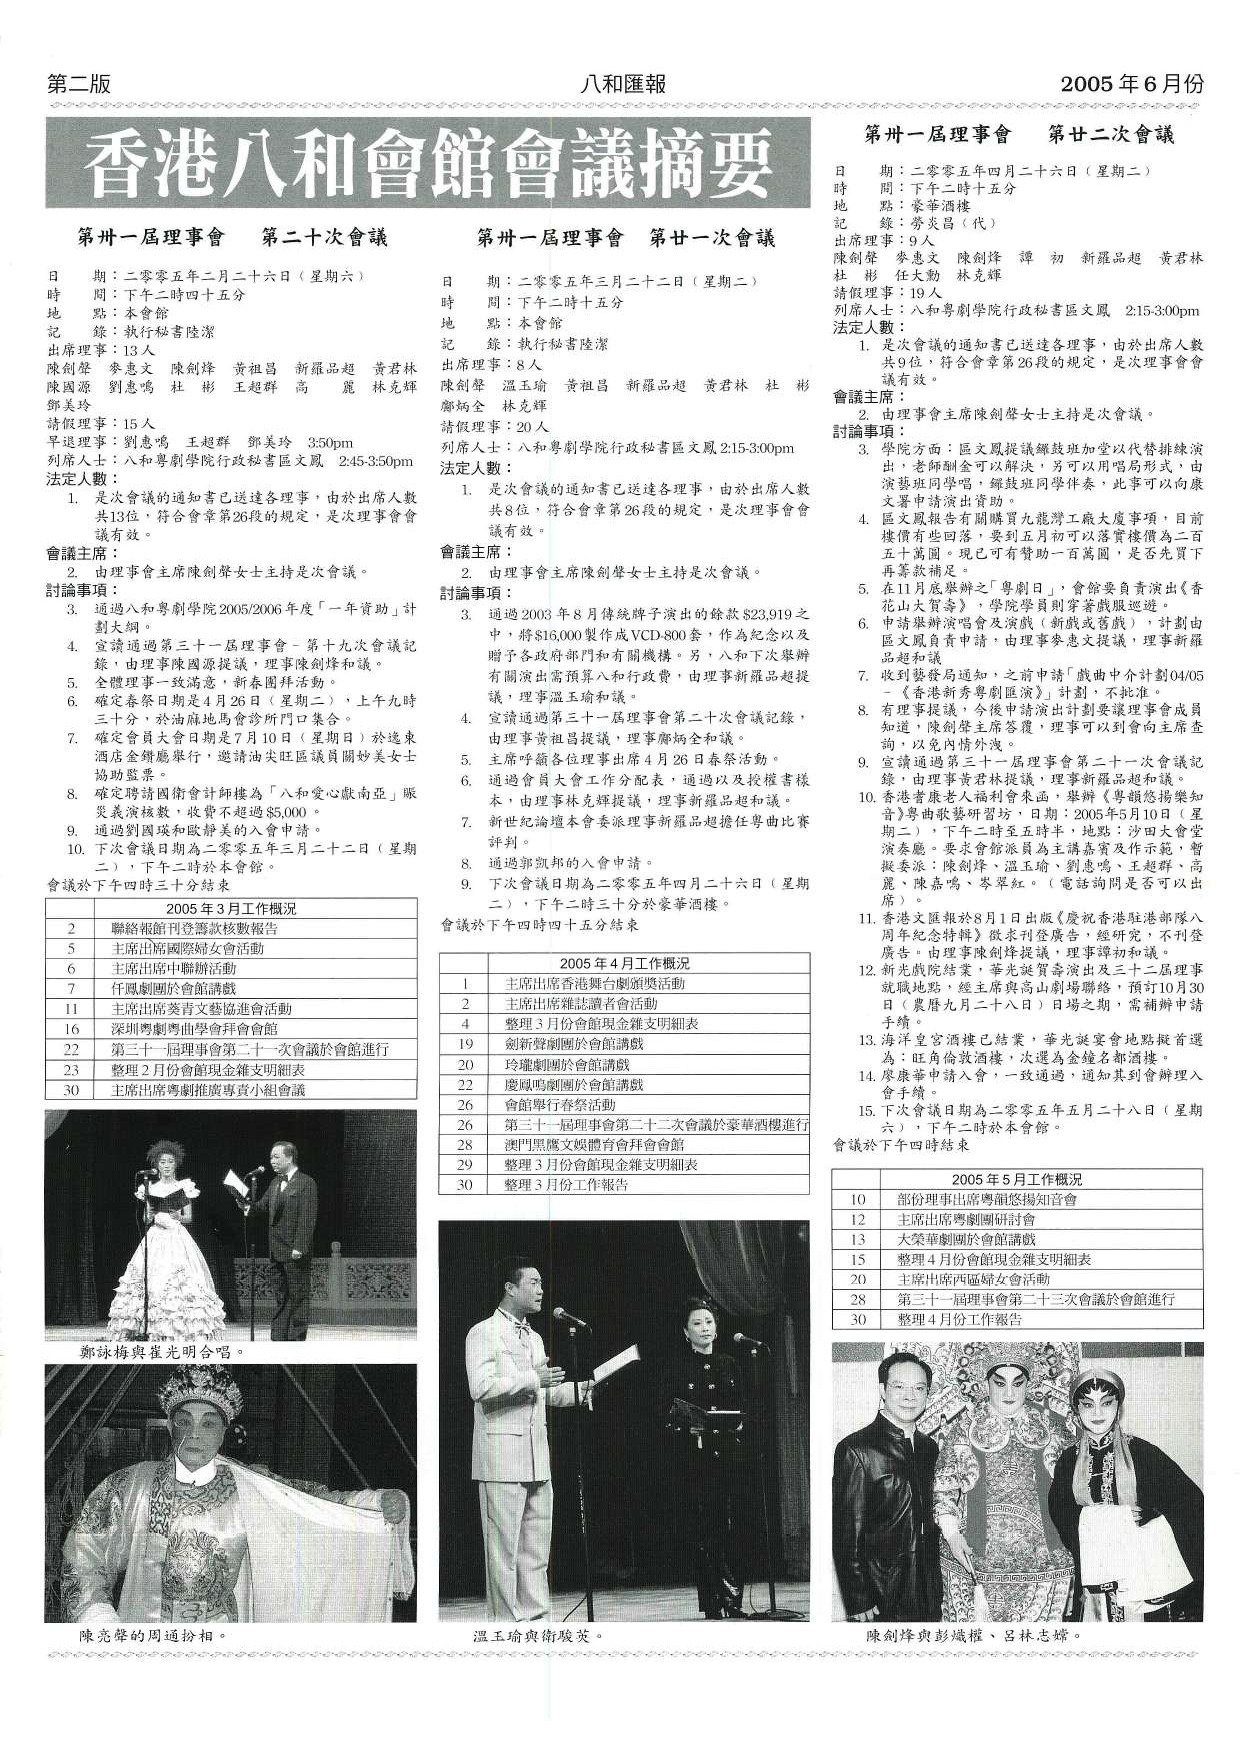 香港八和會館第三十一屆理事會第二十至二十二次會議議程及辦公室報告（2005年3月至5月）